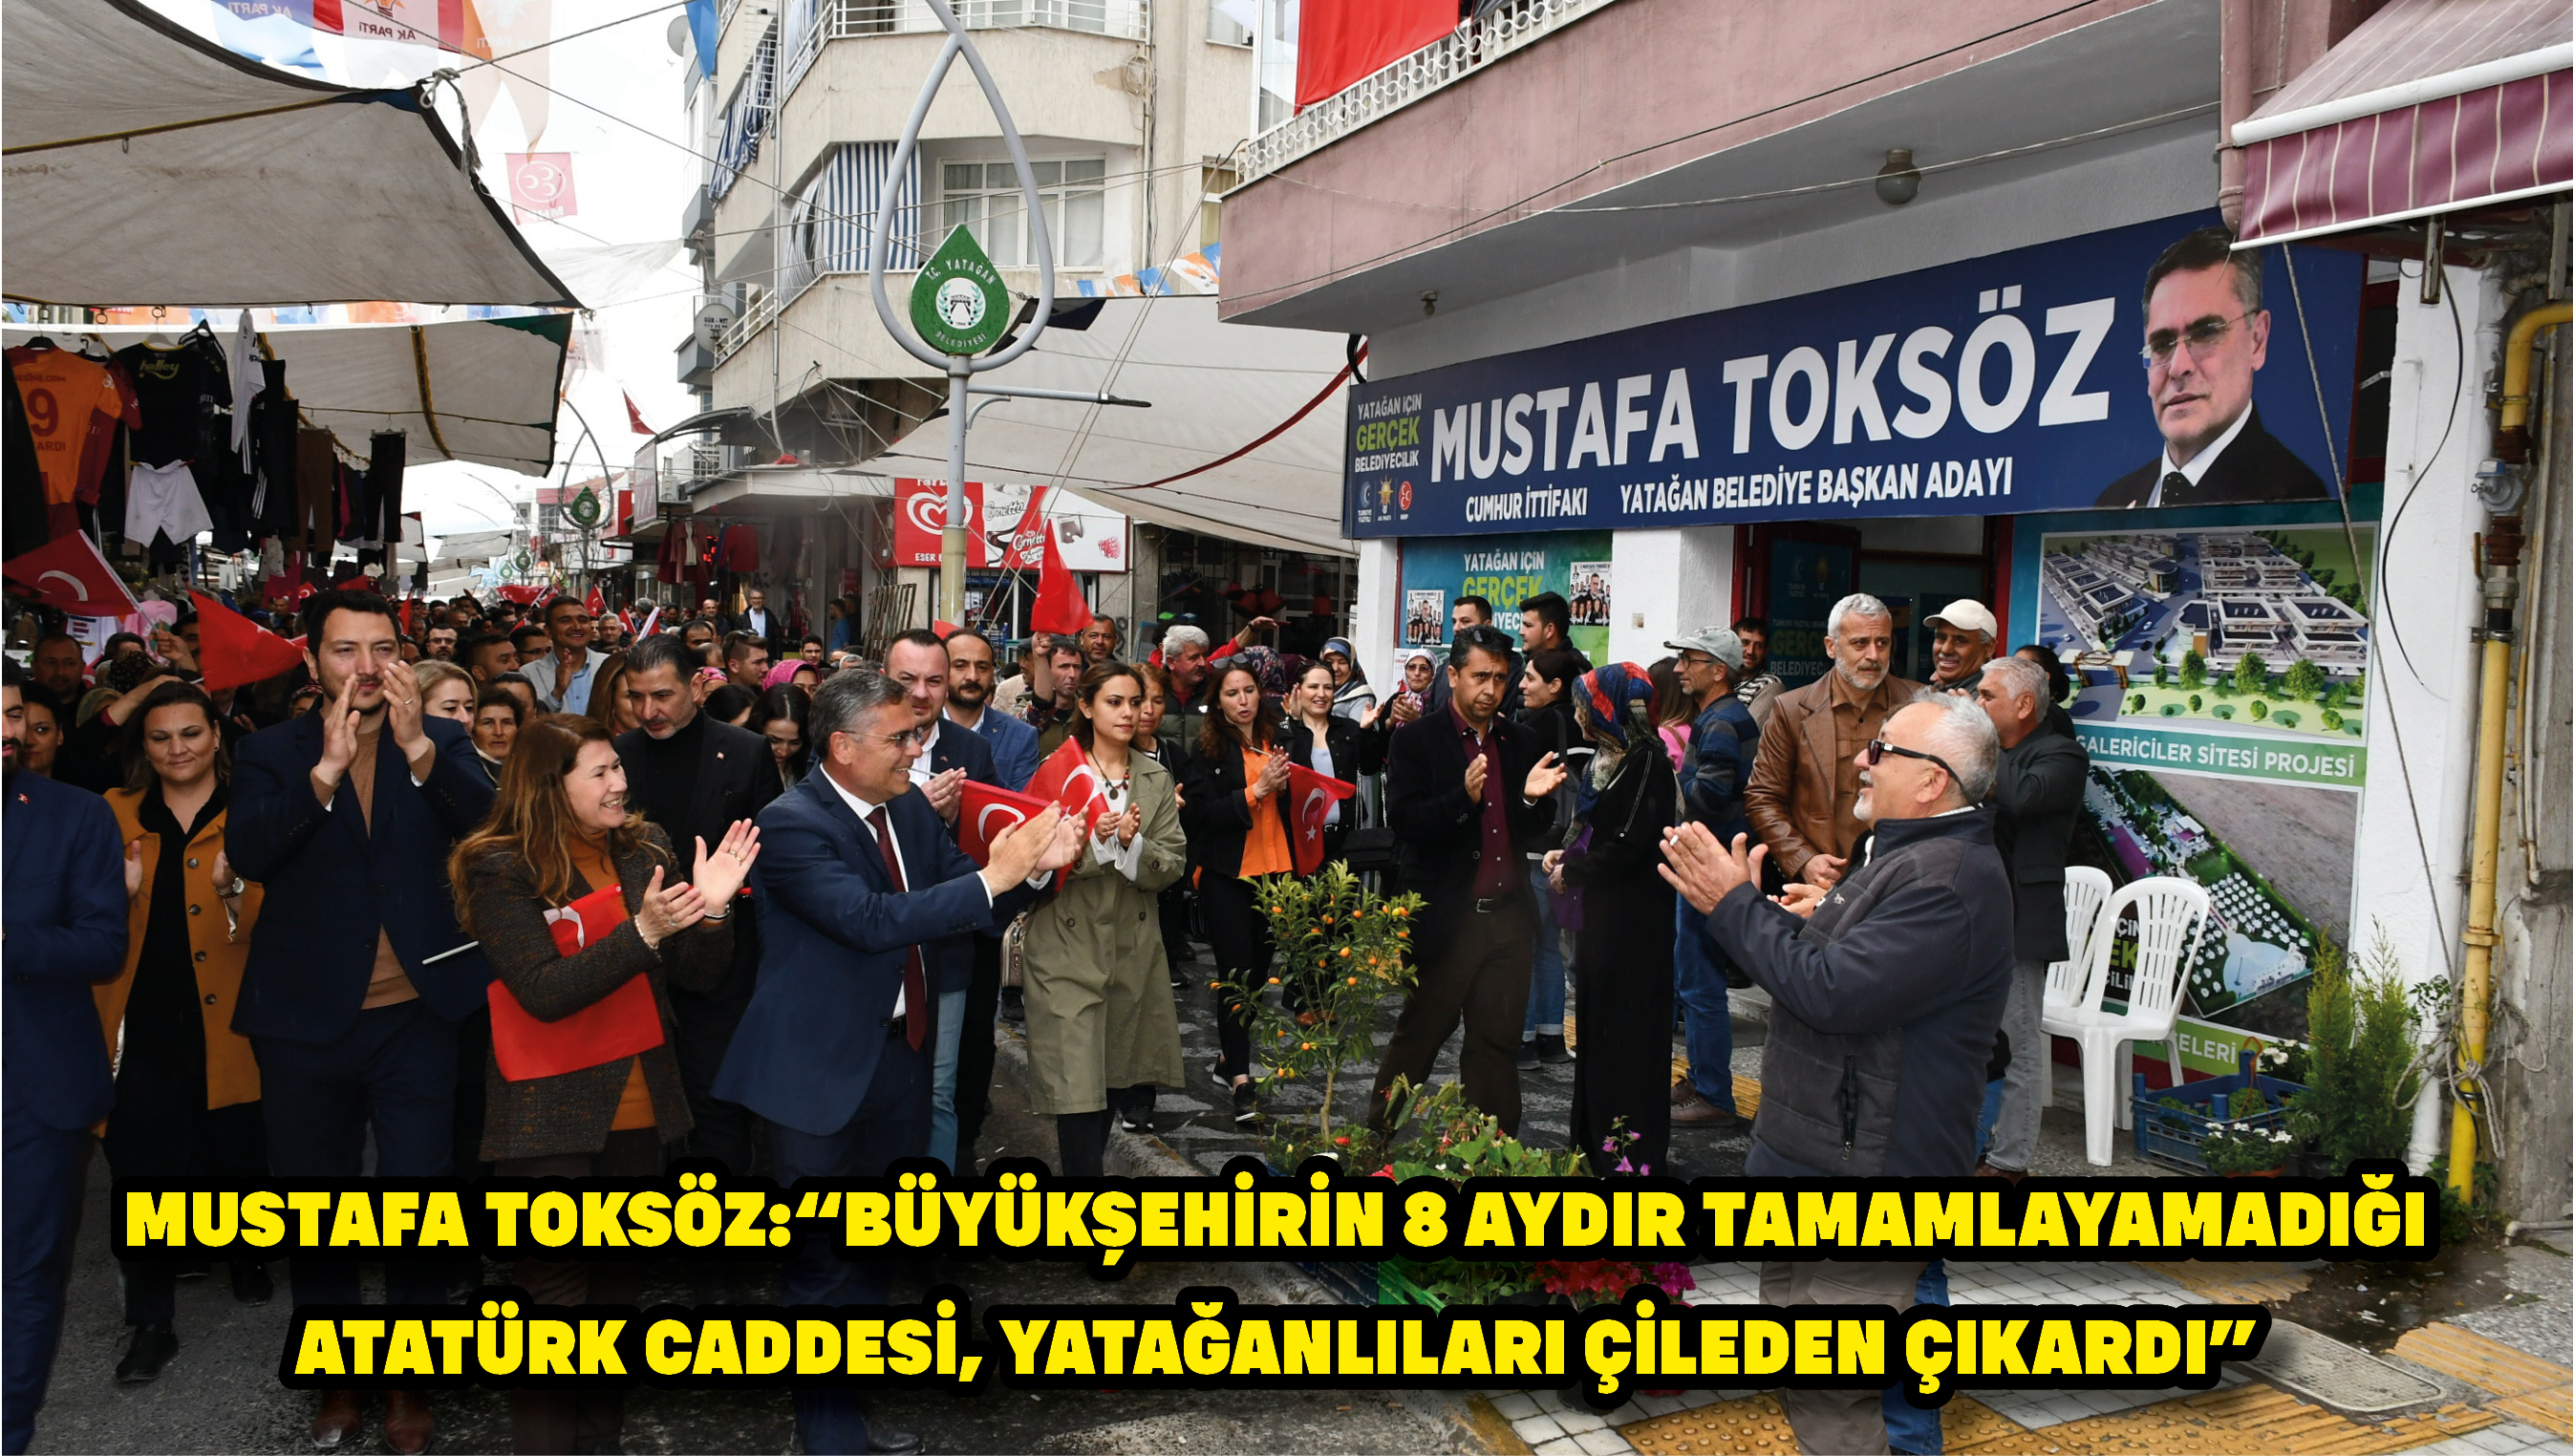 Mustafa Toksöz:“Büyükşehirin 8 aydır tamamlayamadığı Atatürk Caddesi, Yatağanlıları çileden çıkardı”